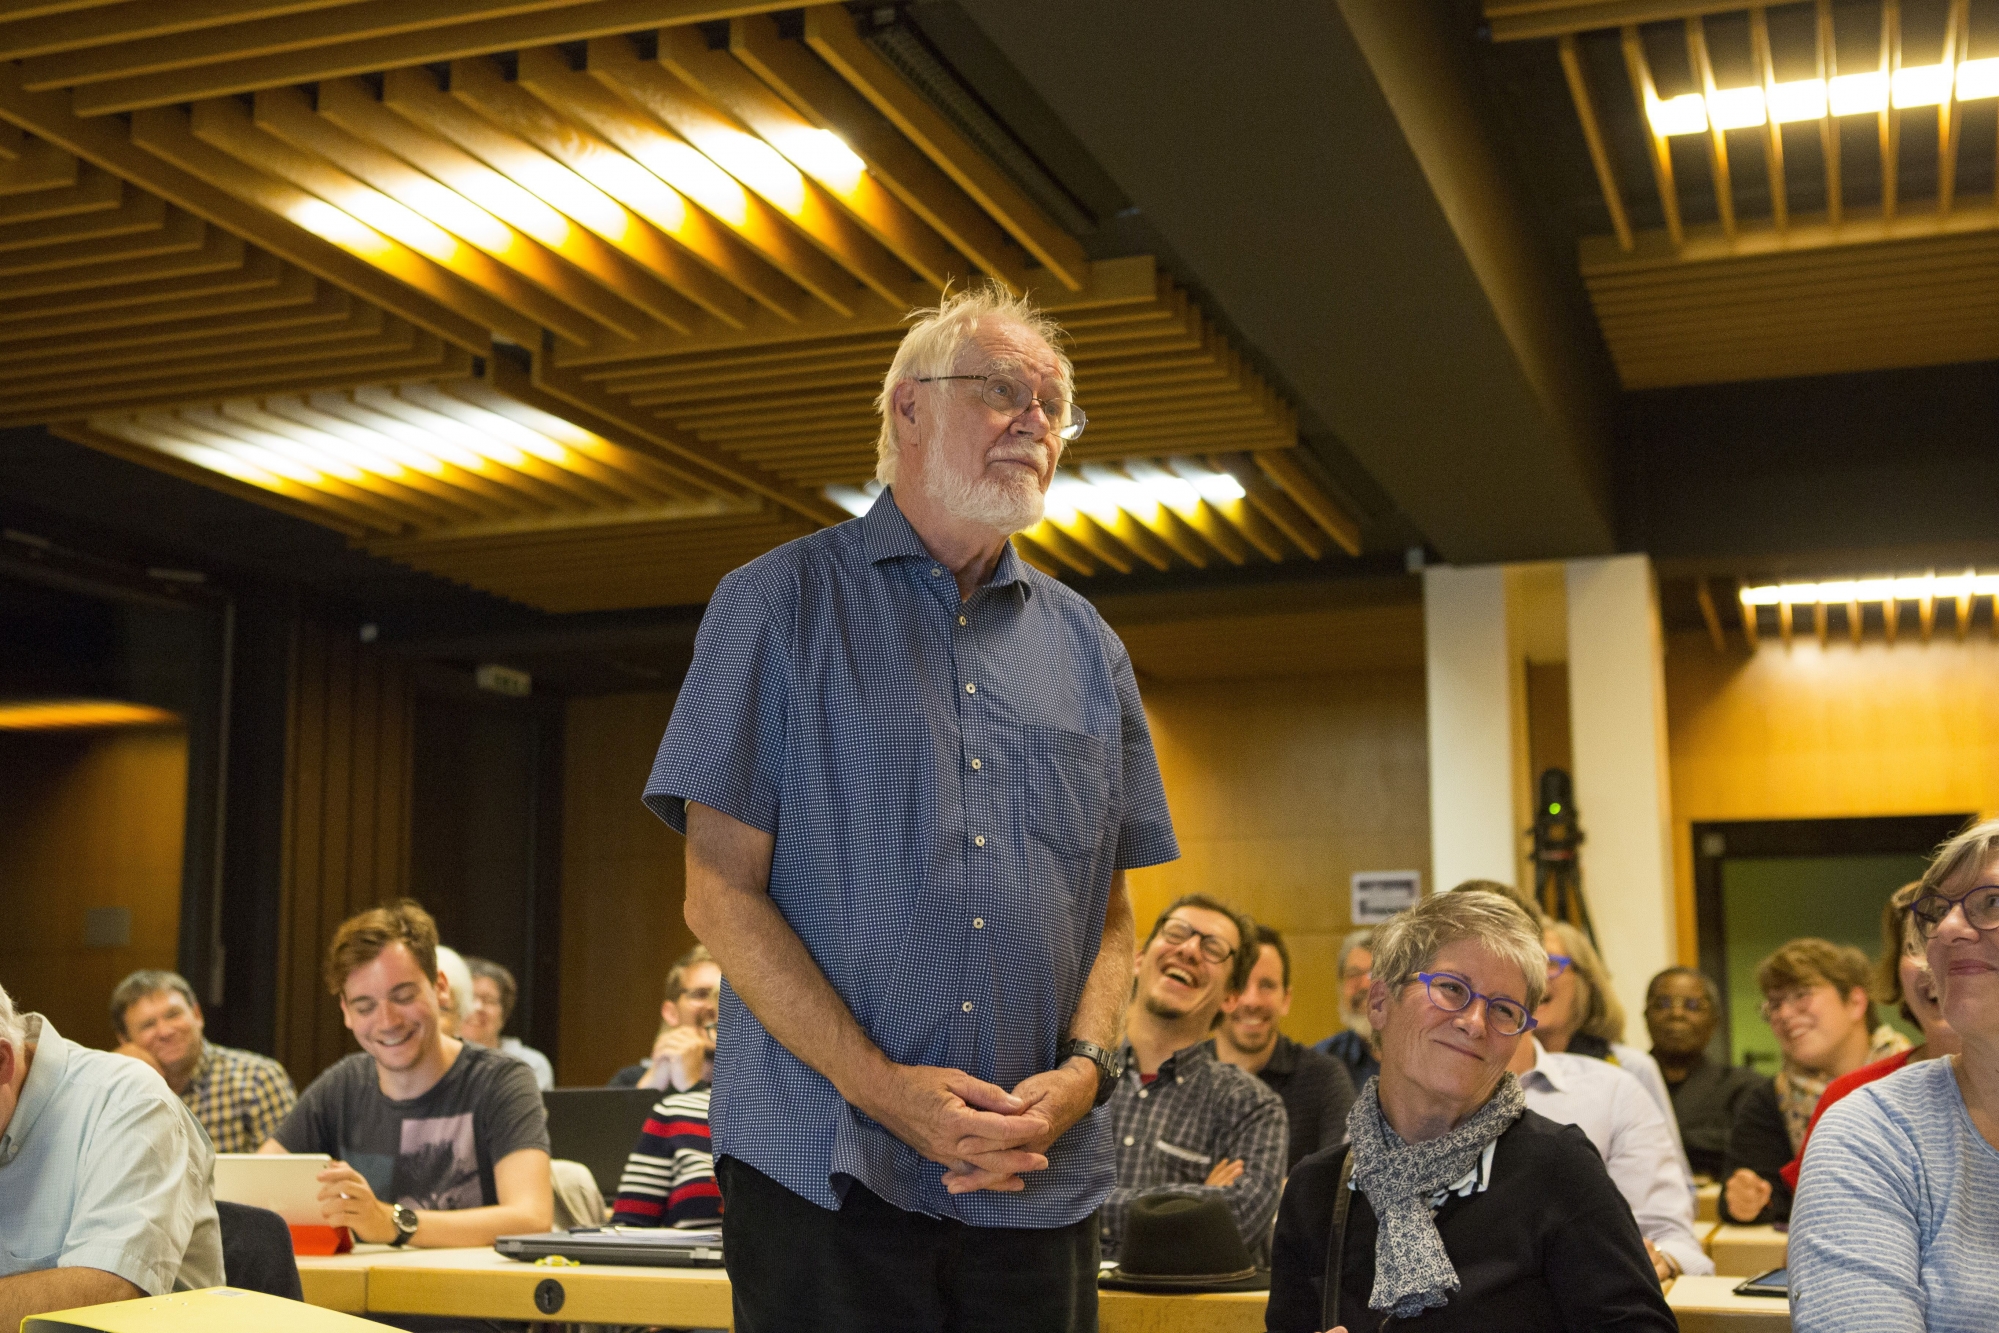 Mercredi 4 octobre 2017, lors du Conseil Communal de Morges au palais Beausobre, Jacques Dubochet, qui vient d'être sacré co-lauréat du prix Nobel de Chimie pour ses travaux en cryo-microscopie électronique, est félicité par les morgiens. Prix Nobel de Chimie